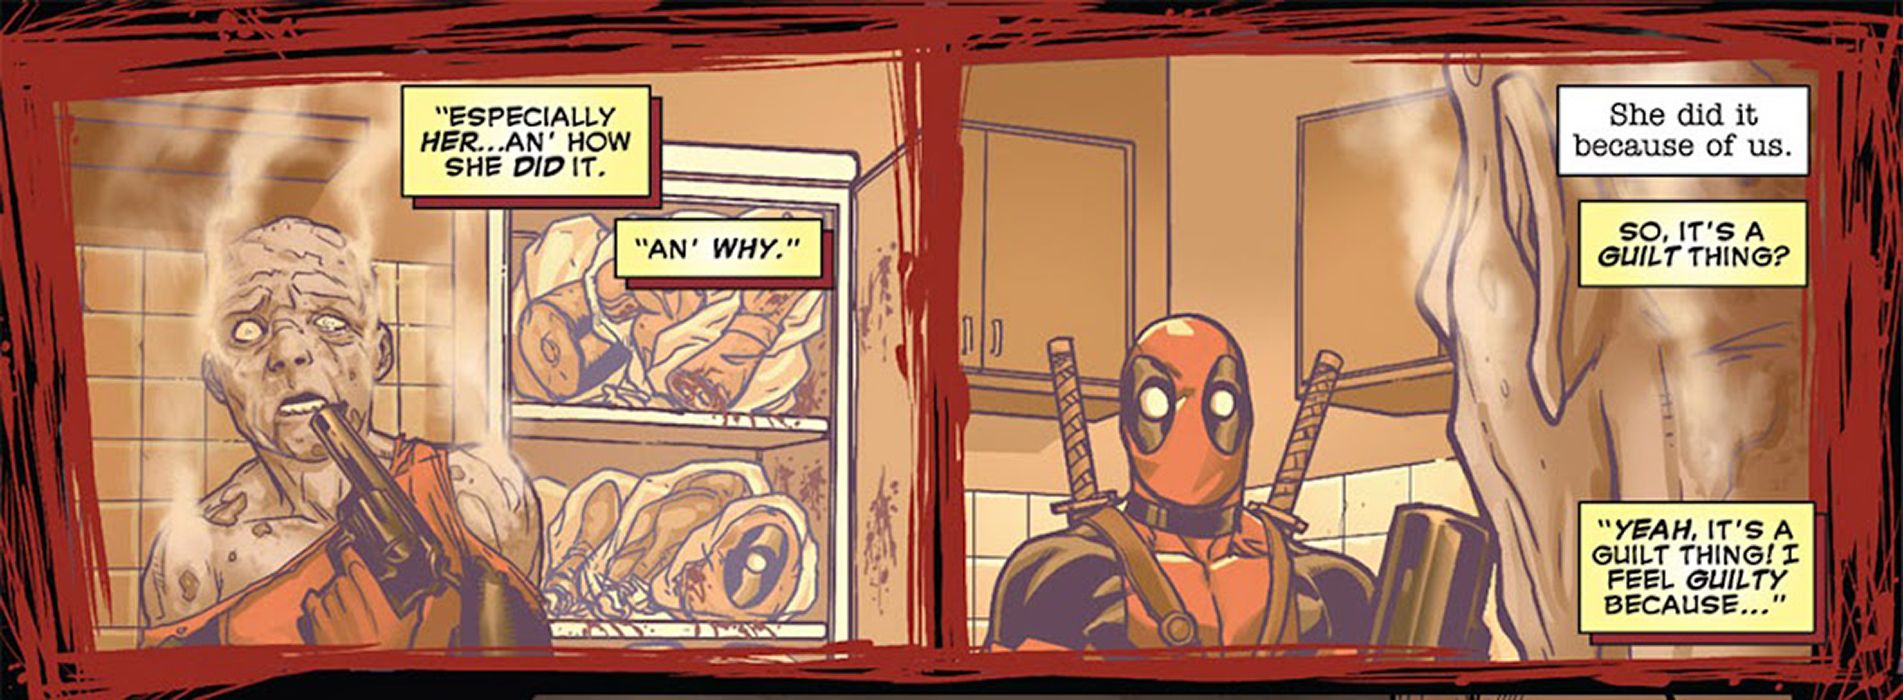 Kadr z filmu Deadpool (2008) #45 - Deadpool czuje się winny z powodu samobójstwa doktora Whitby'ego.